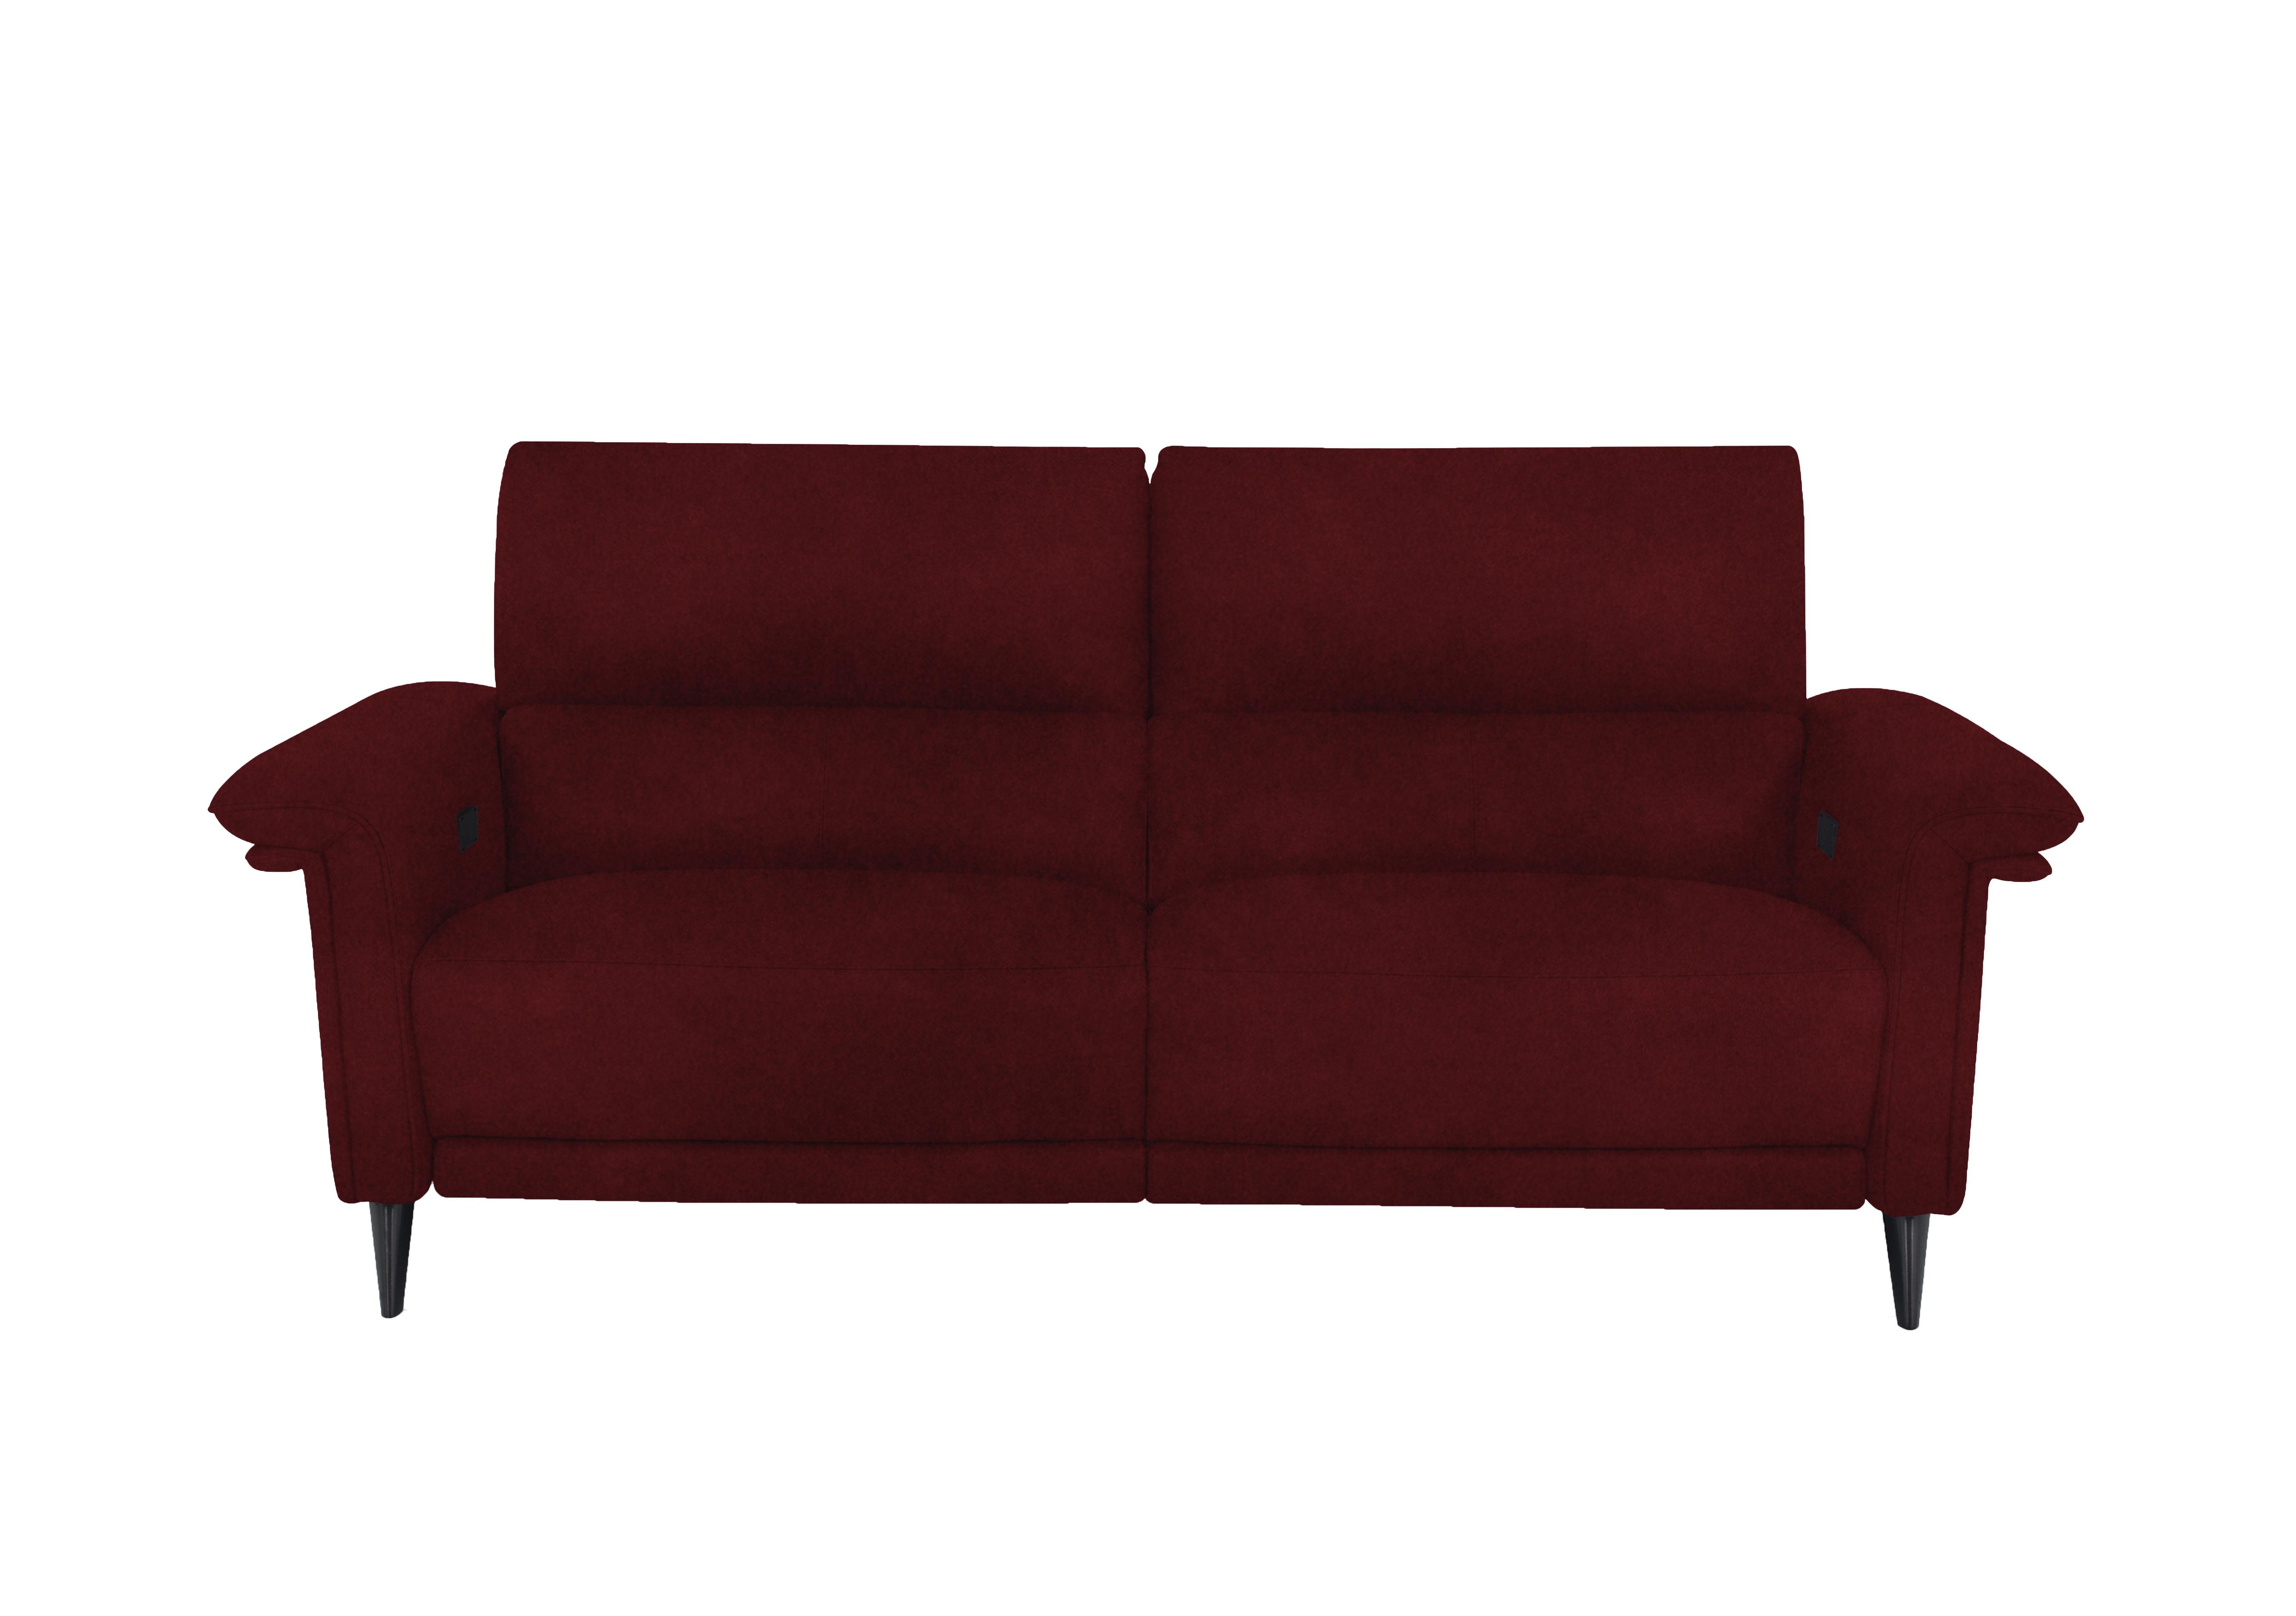 Huxley 3 Seater Fabric Sofa in Fab-Meg-R65 Burgundy on Furniture Village